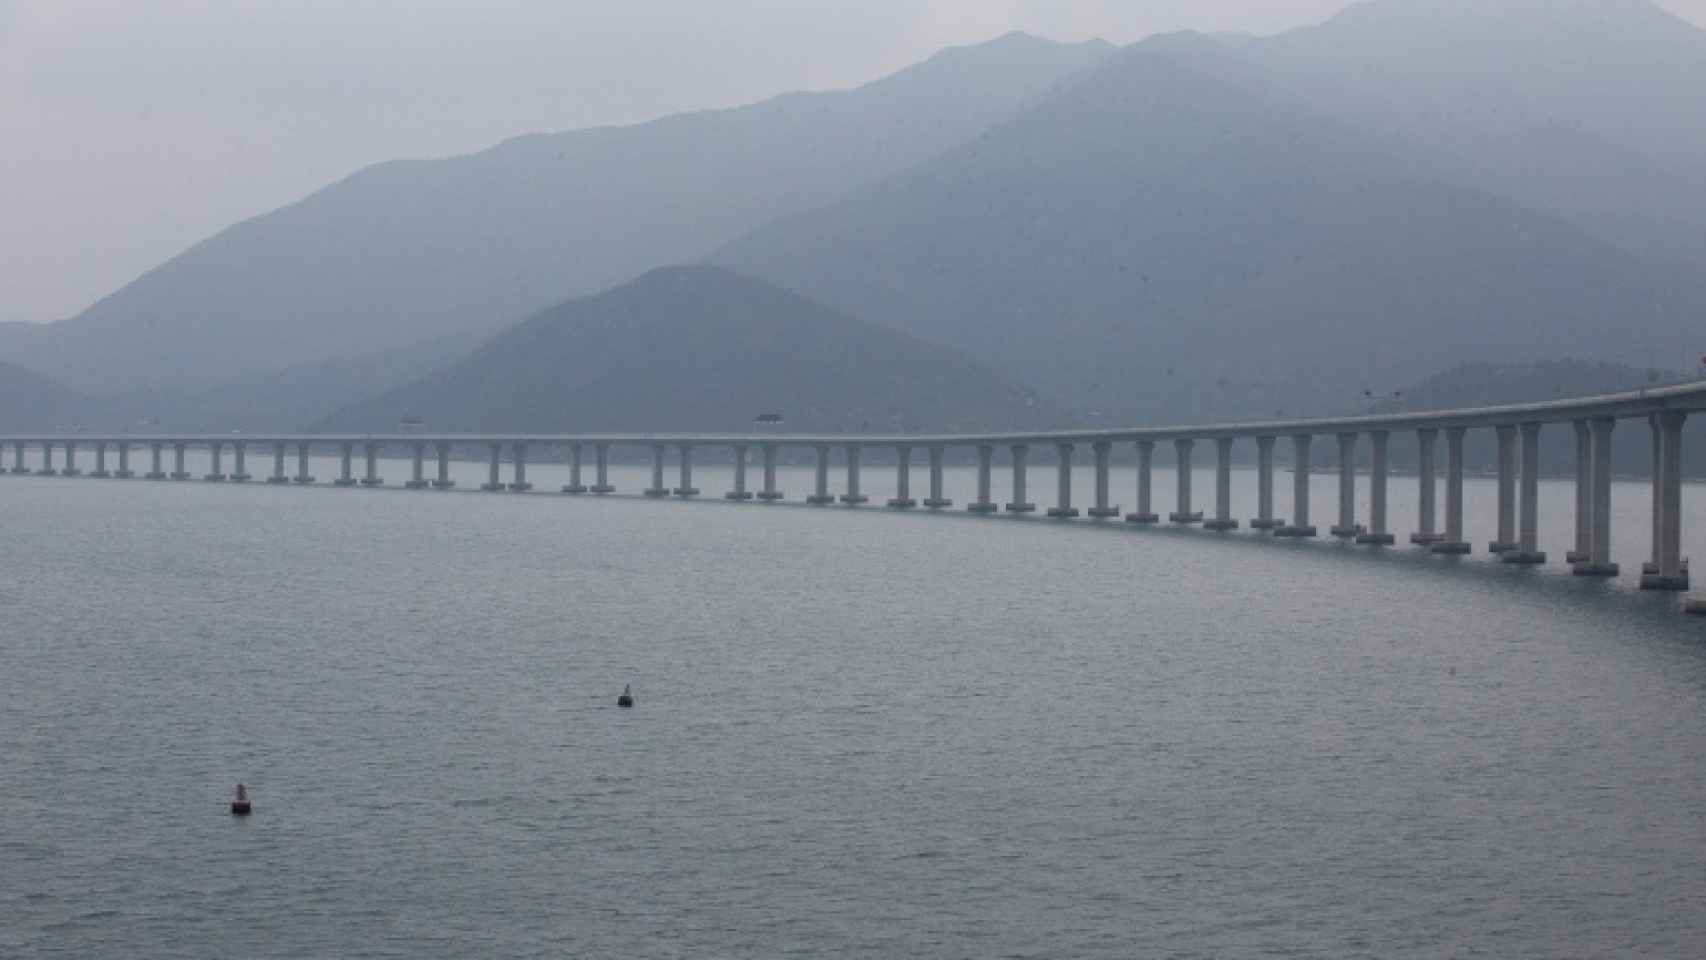 El nuevo puente más largo del mundo en China incorpora reconocimiento facial